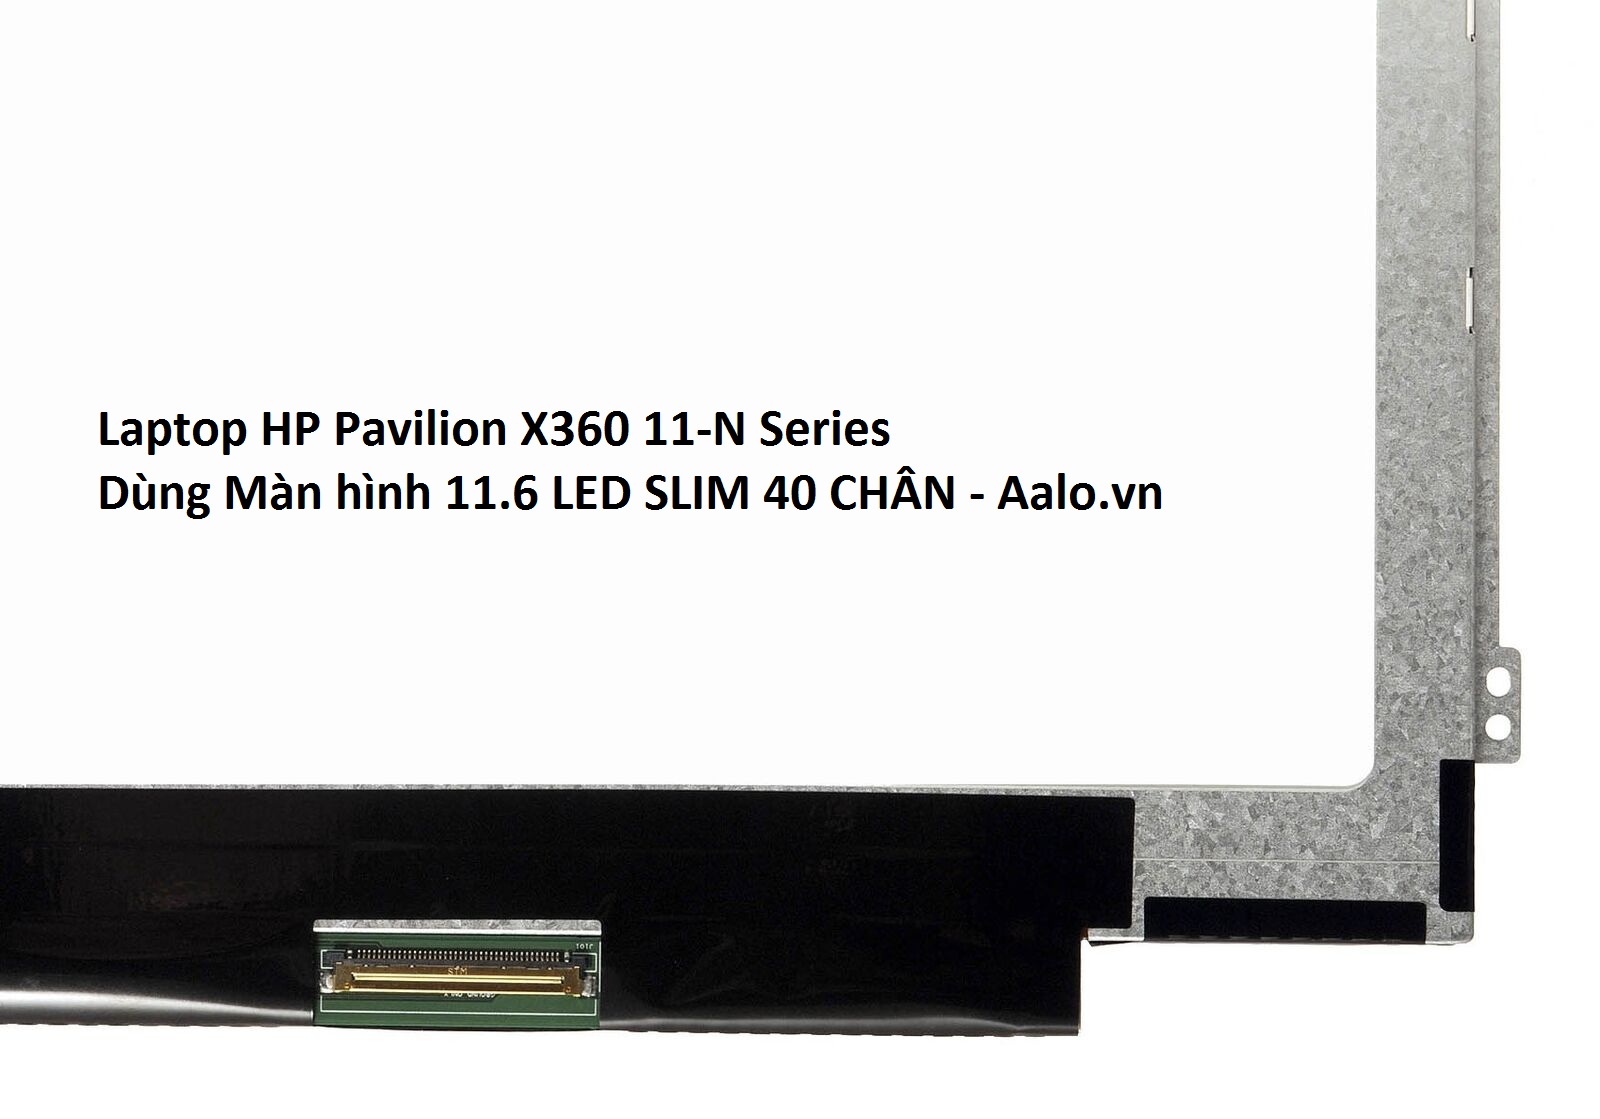 Màn hình Laptop HP Pavilion X360 11-N Series - Aalo.vn